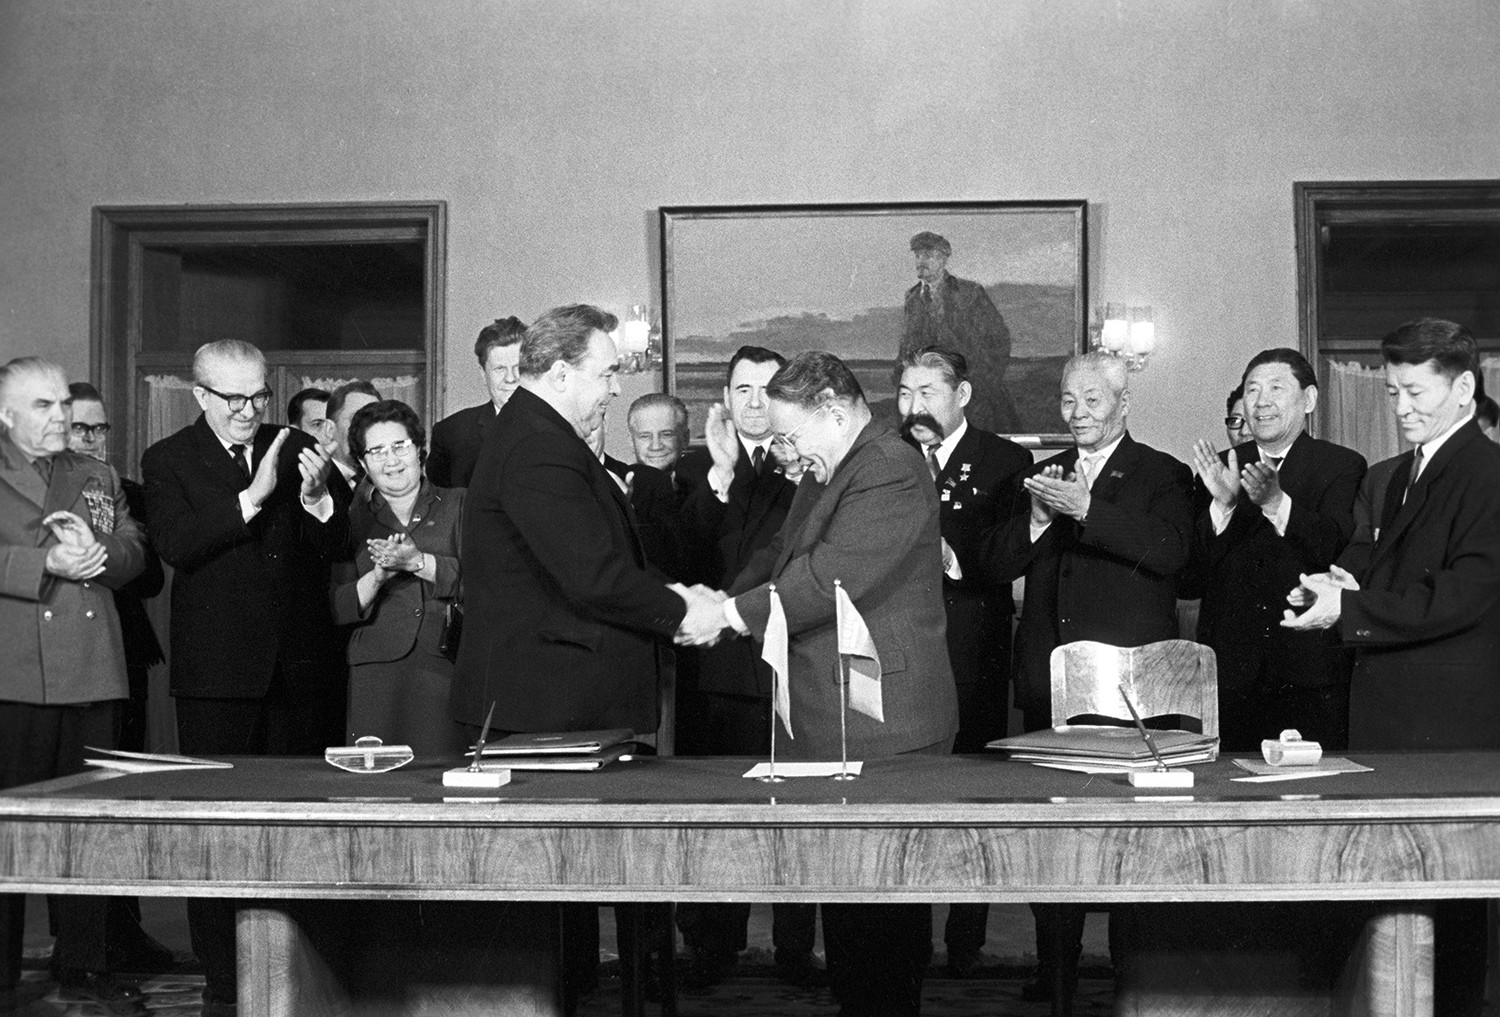 モンゴル首相ユムジャーギィン・ツェデンバル（右）がソ連共産党第一書記レオニード・ブレジネフと握手をしている。ソ連政府・共産党の団体によるモンゴルへの訪問の一環として締結されたソ蒙友好協力相互援助条約の後。1966年1月12日。